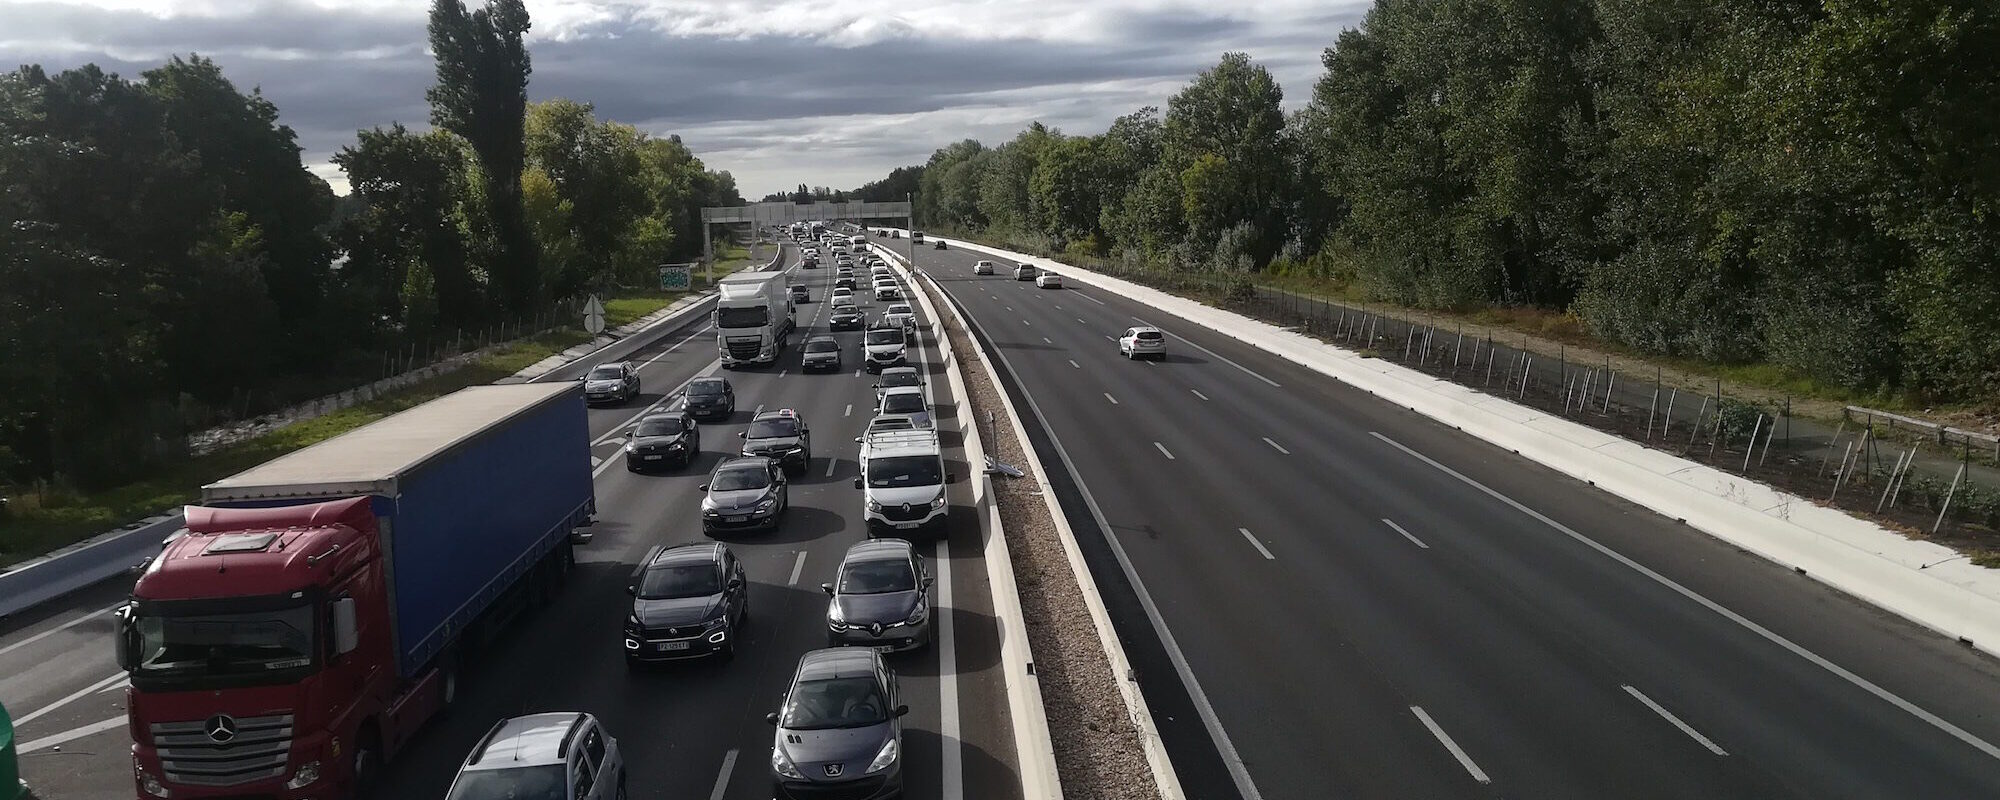 Le trafic des camions régulé, les transports collectifs libérés bientôt sur la rocade de Bordeaux et les autoroutes